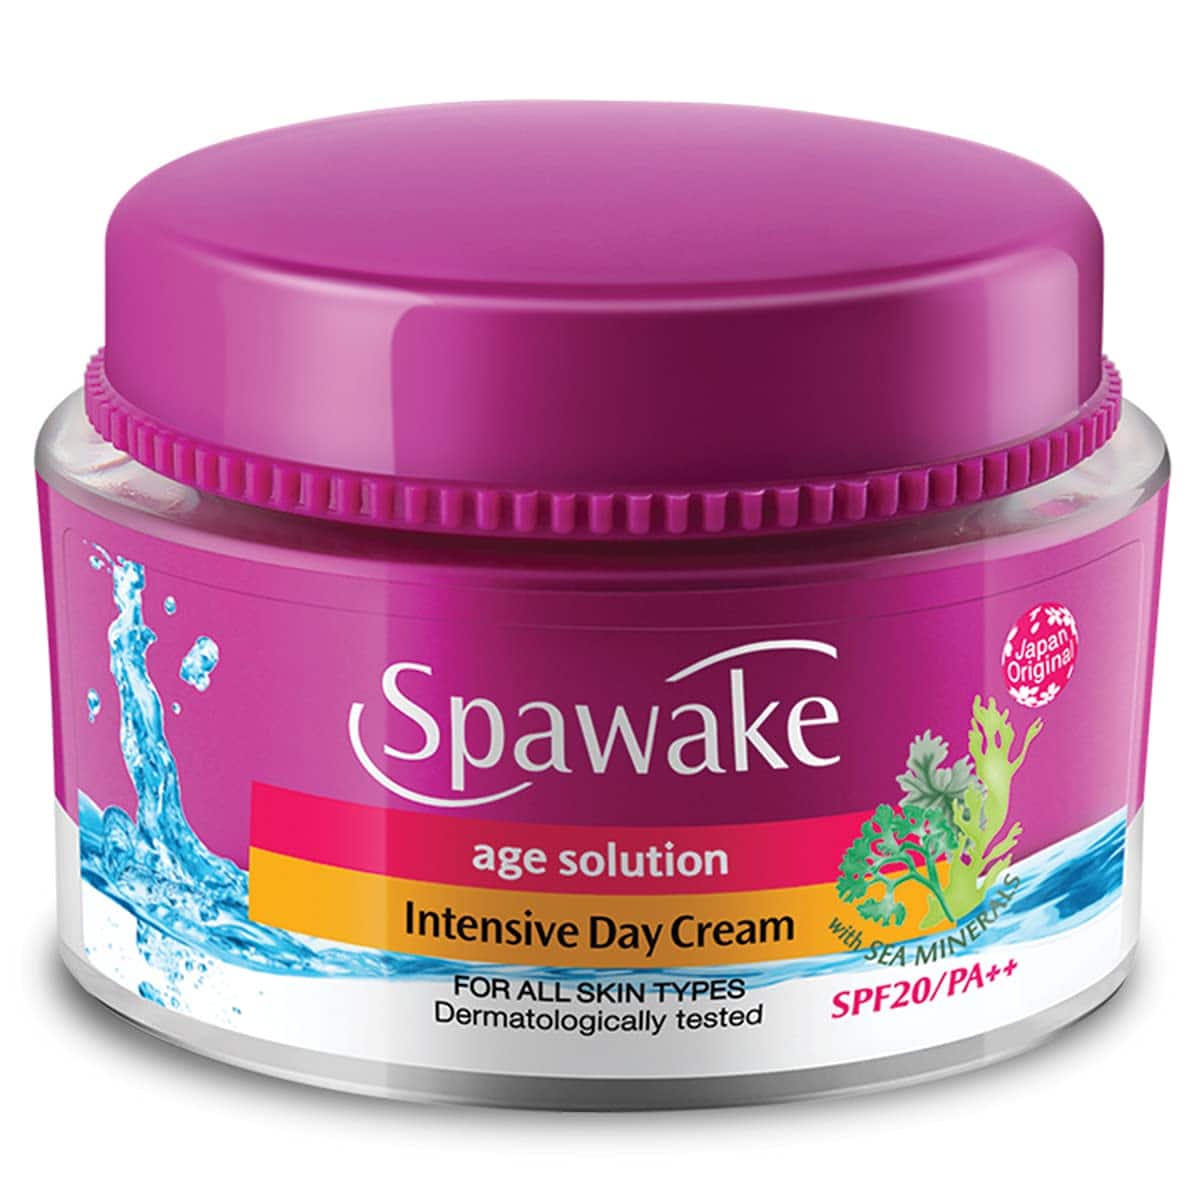 Spawake Anti-Aging Face Cream